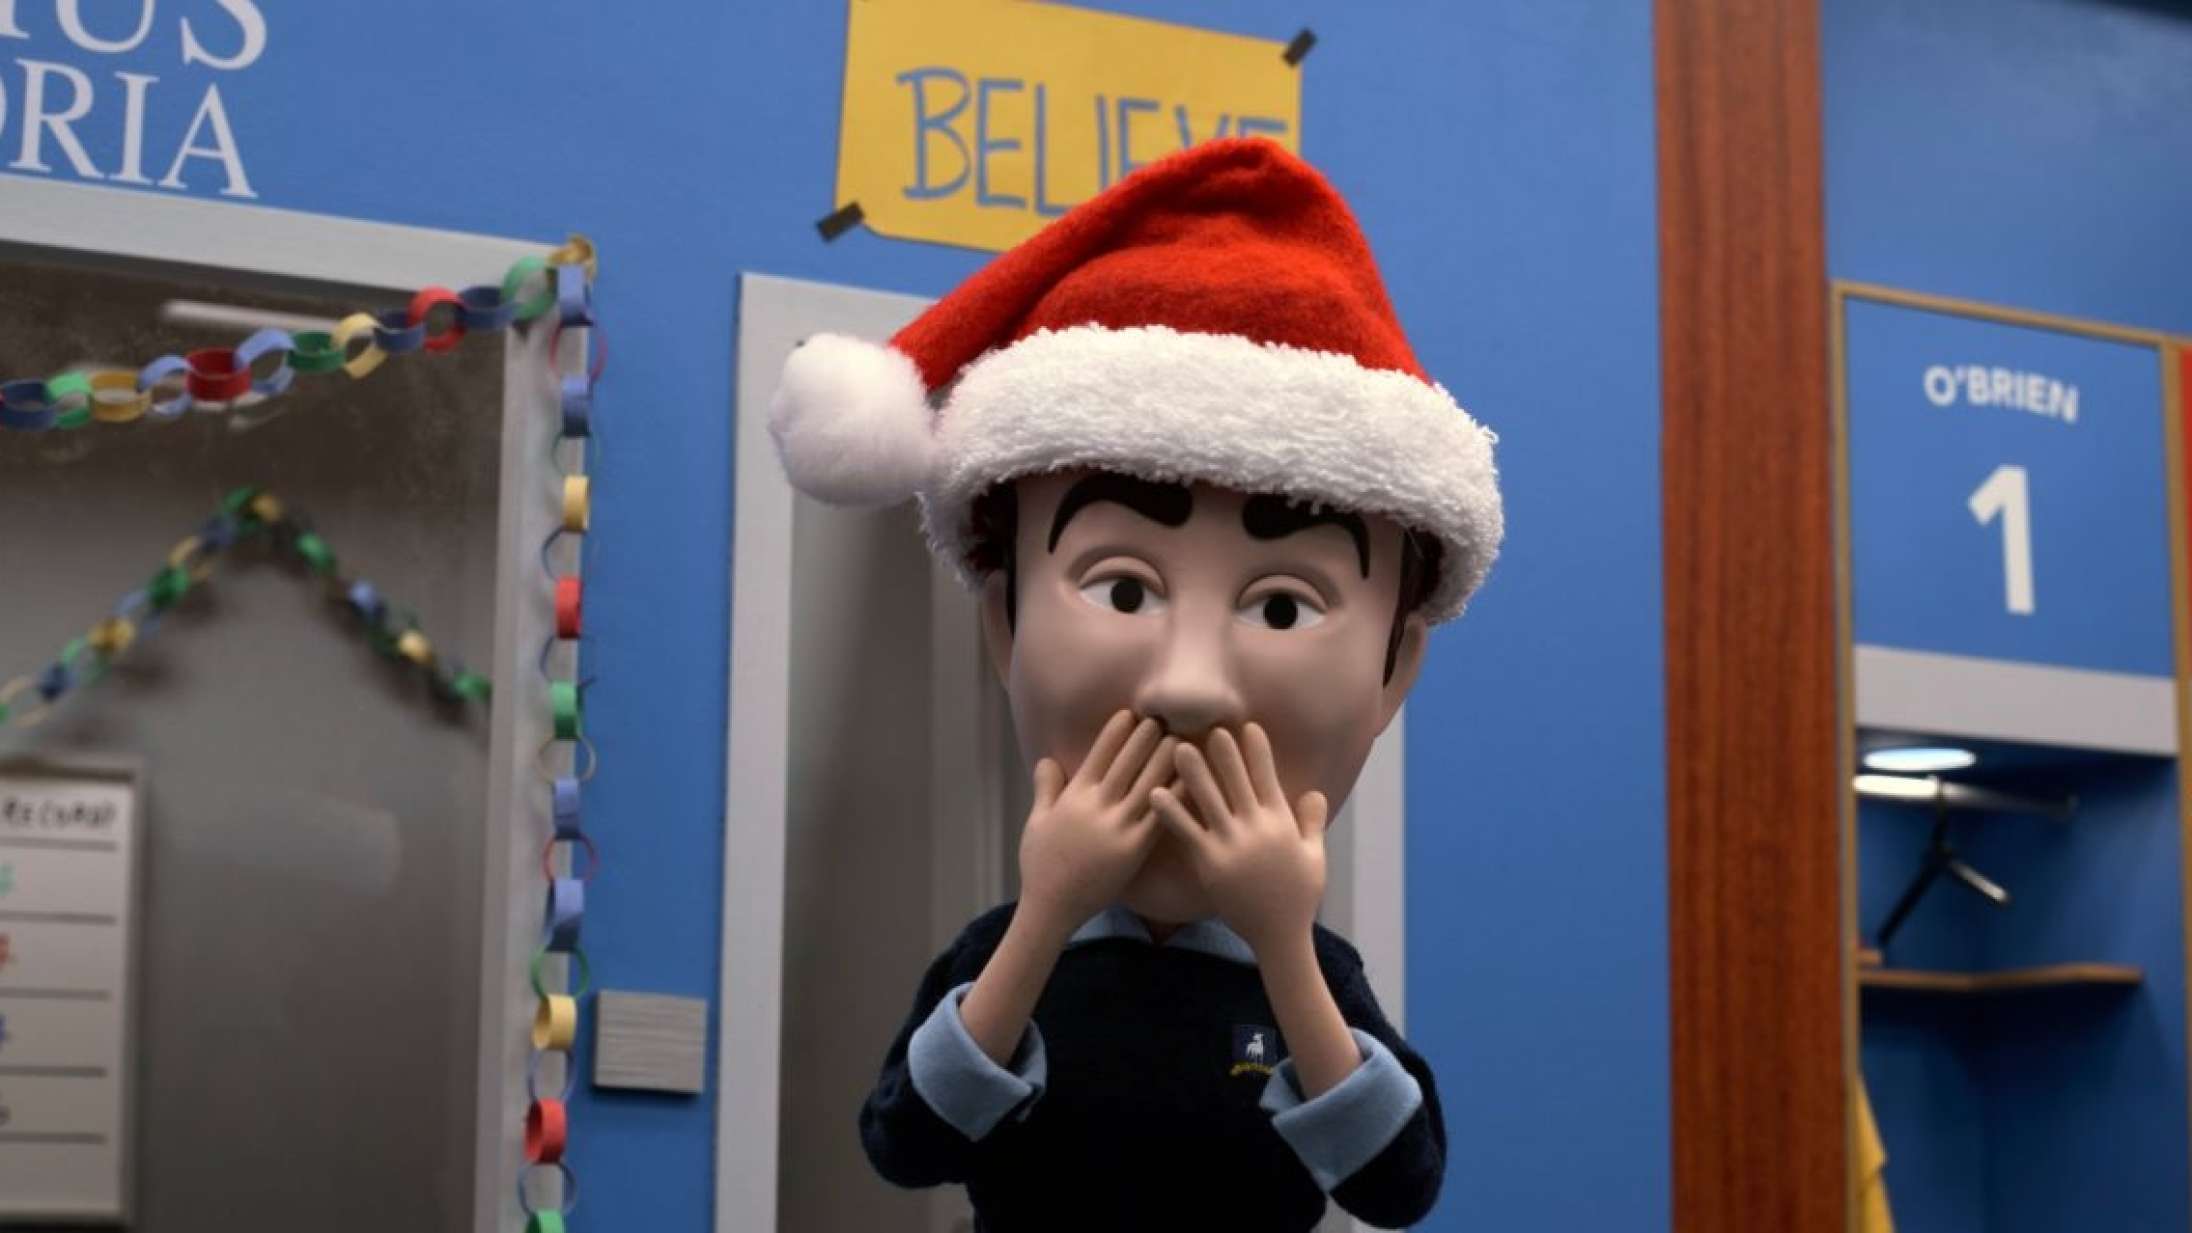 ’Ted Lasso’ giver tidlig julegave med stop-motion-video om Teds forsvundne overskæg